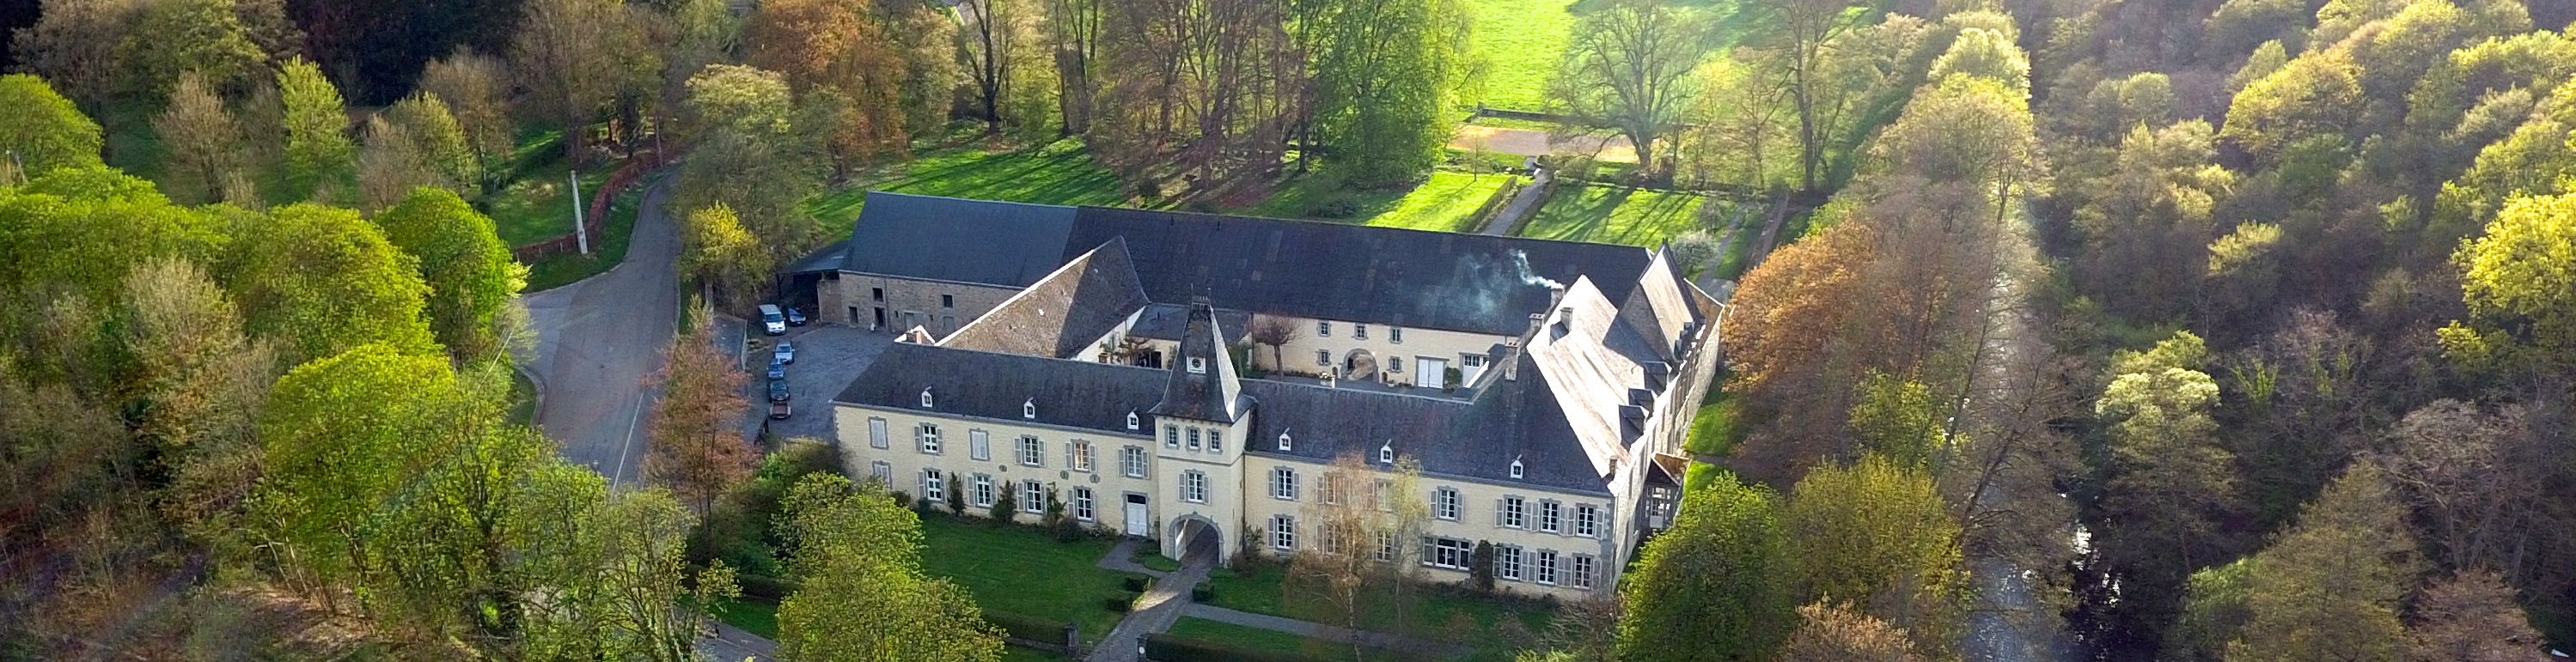 Château de Resteigne, Wedding ceremony & party castle, Belgium